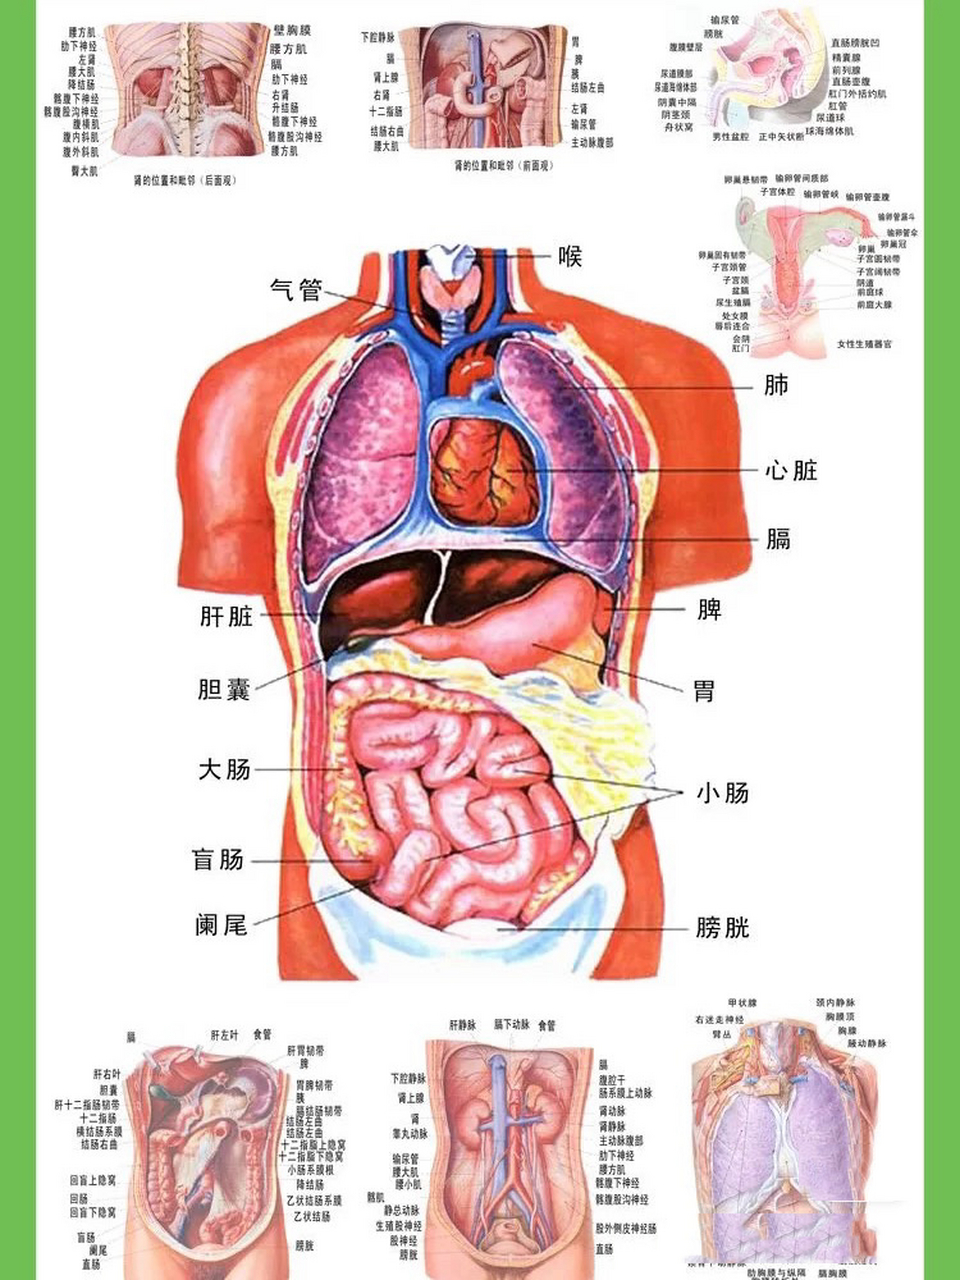 人体结构图 网上随便找的图,用于不舒服的时候对照器官